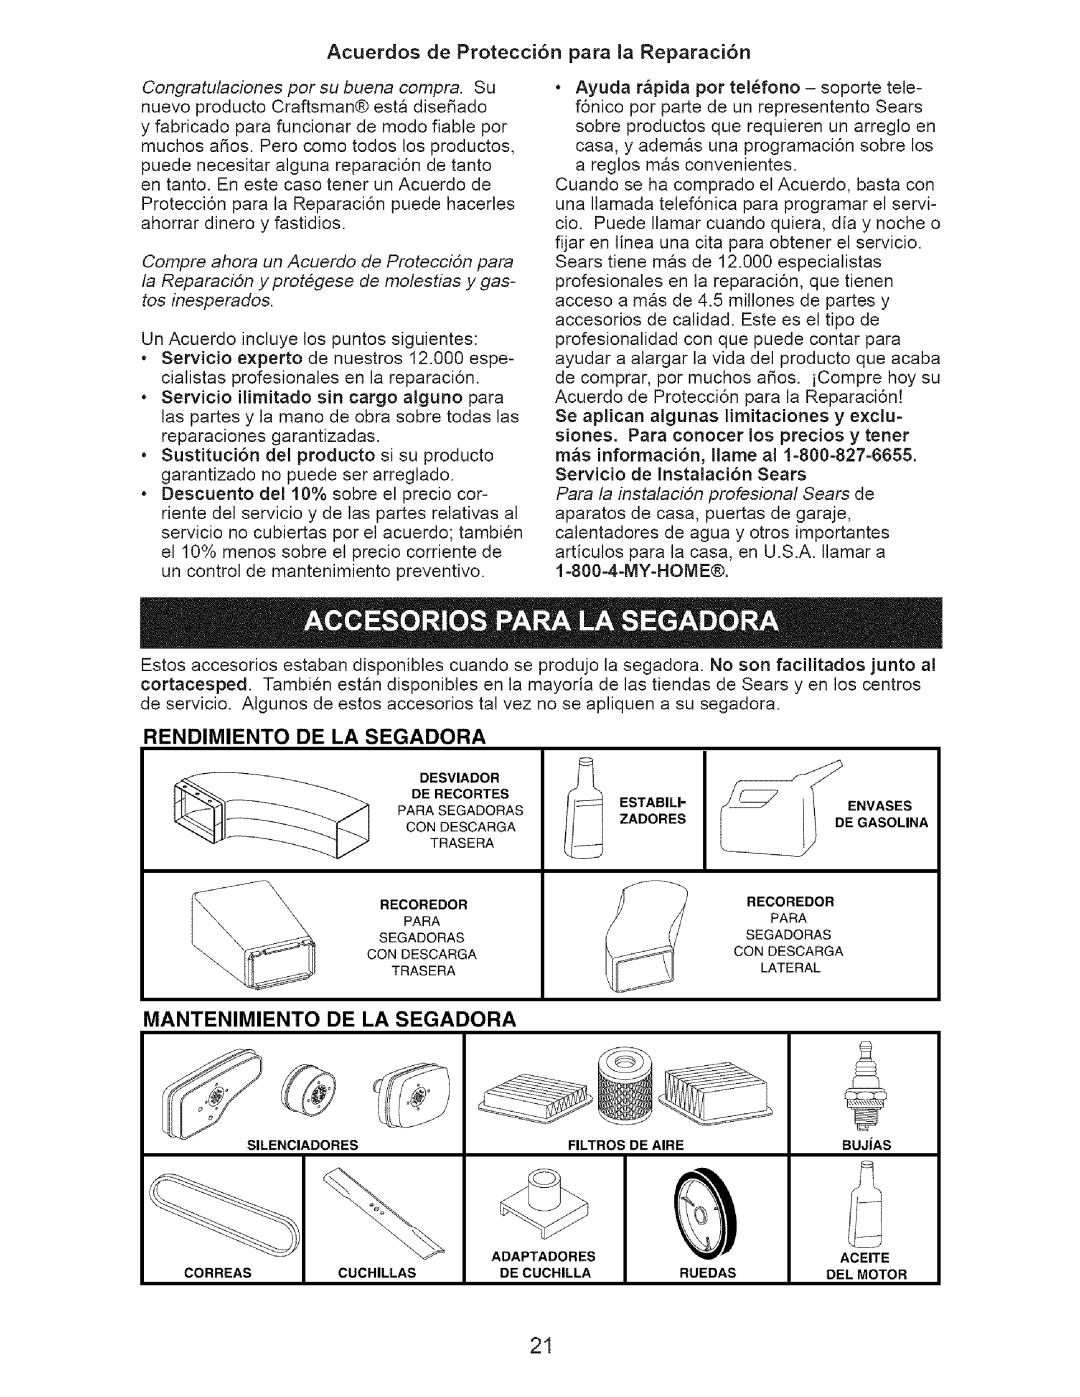 Craftsman 917.3882 owner manual Rendimiento De La Segadora, Mantenimiento De La Segadora 